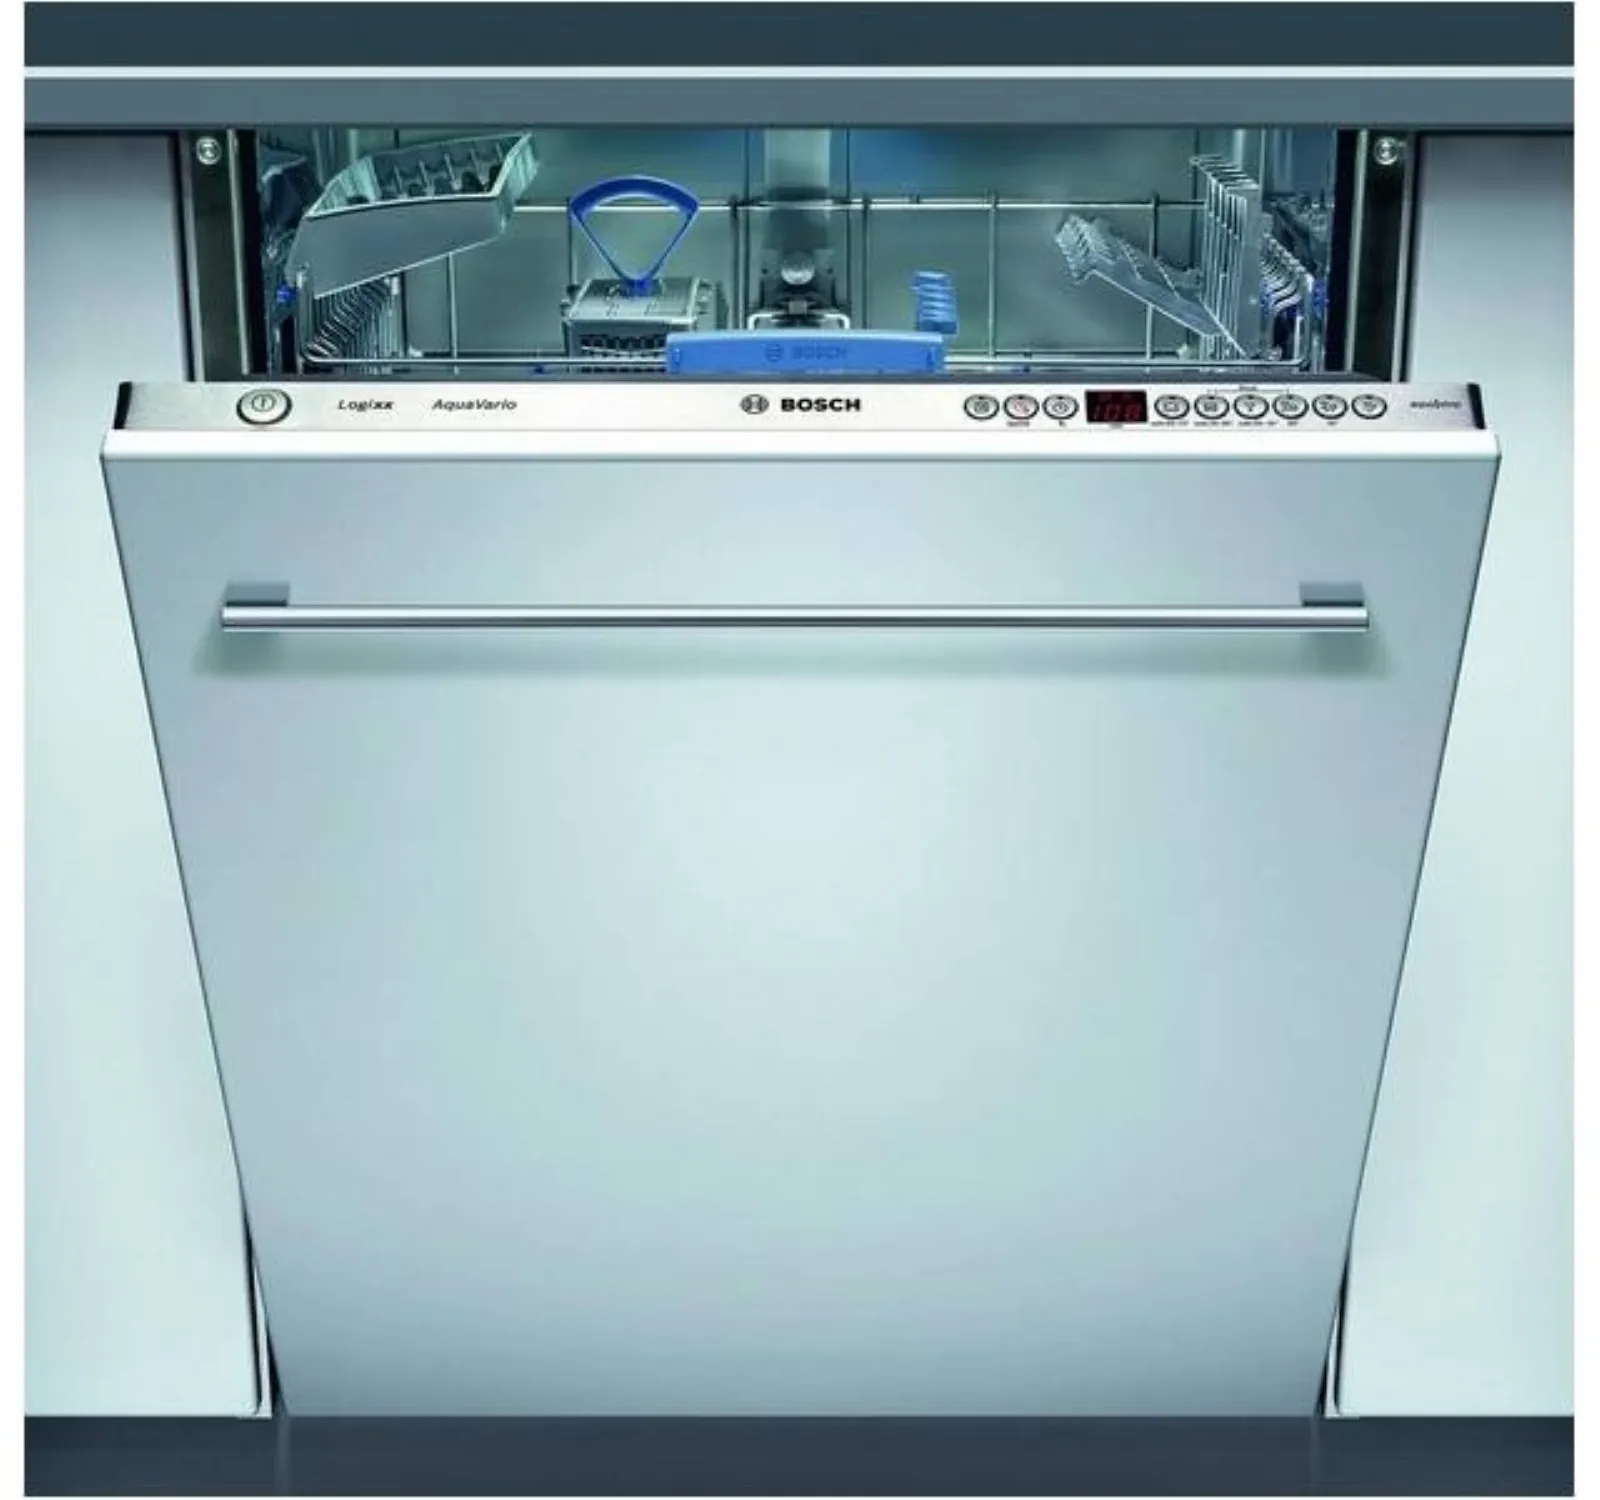 Купить встроенную посудомоечную машину bosch 60 см. Посудомоечная машина Bosch SGV 43e43. Посудомоечная машина Bosch SGV 59a03. Посудомоечная машина Bosch 60 см встраиваемая. Посудомоечная машина бош 60 см встраиваемая.